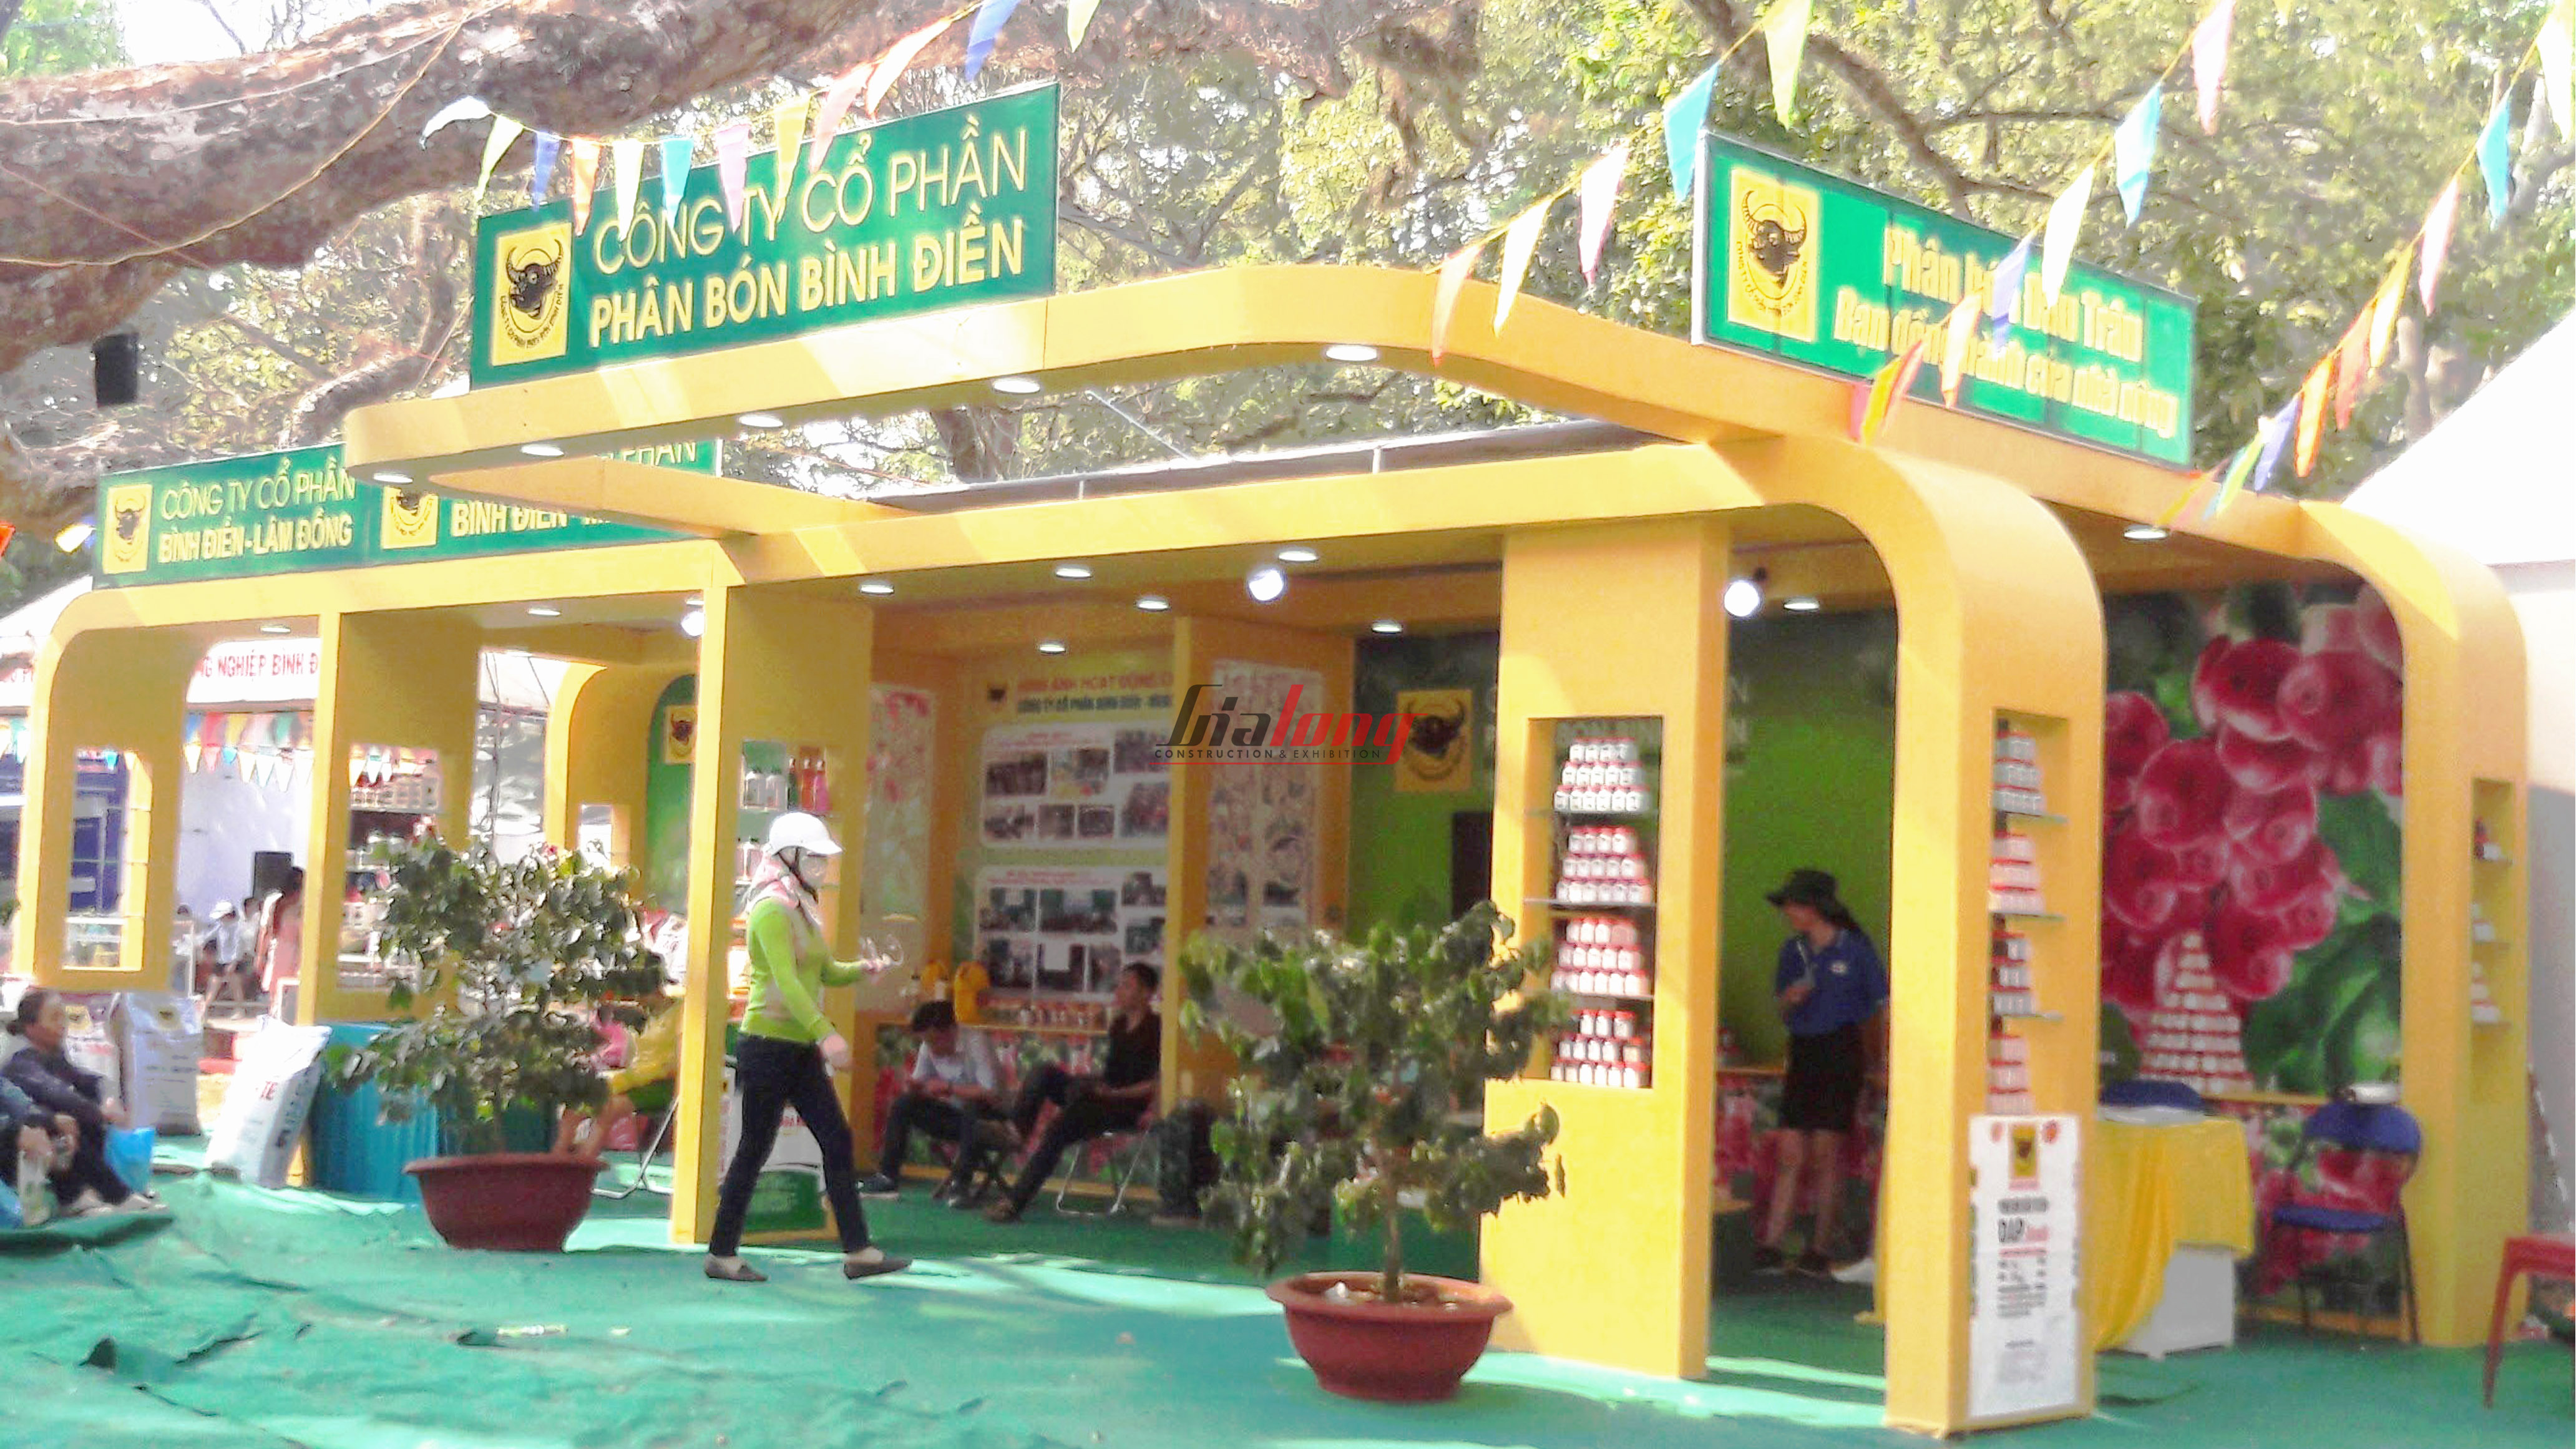 Phan Bon Binh Dien - Thi công hội chợ Cà phê Buôn Ma Thuột - Construction of Buon Ma Thuot Coffee fair booth